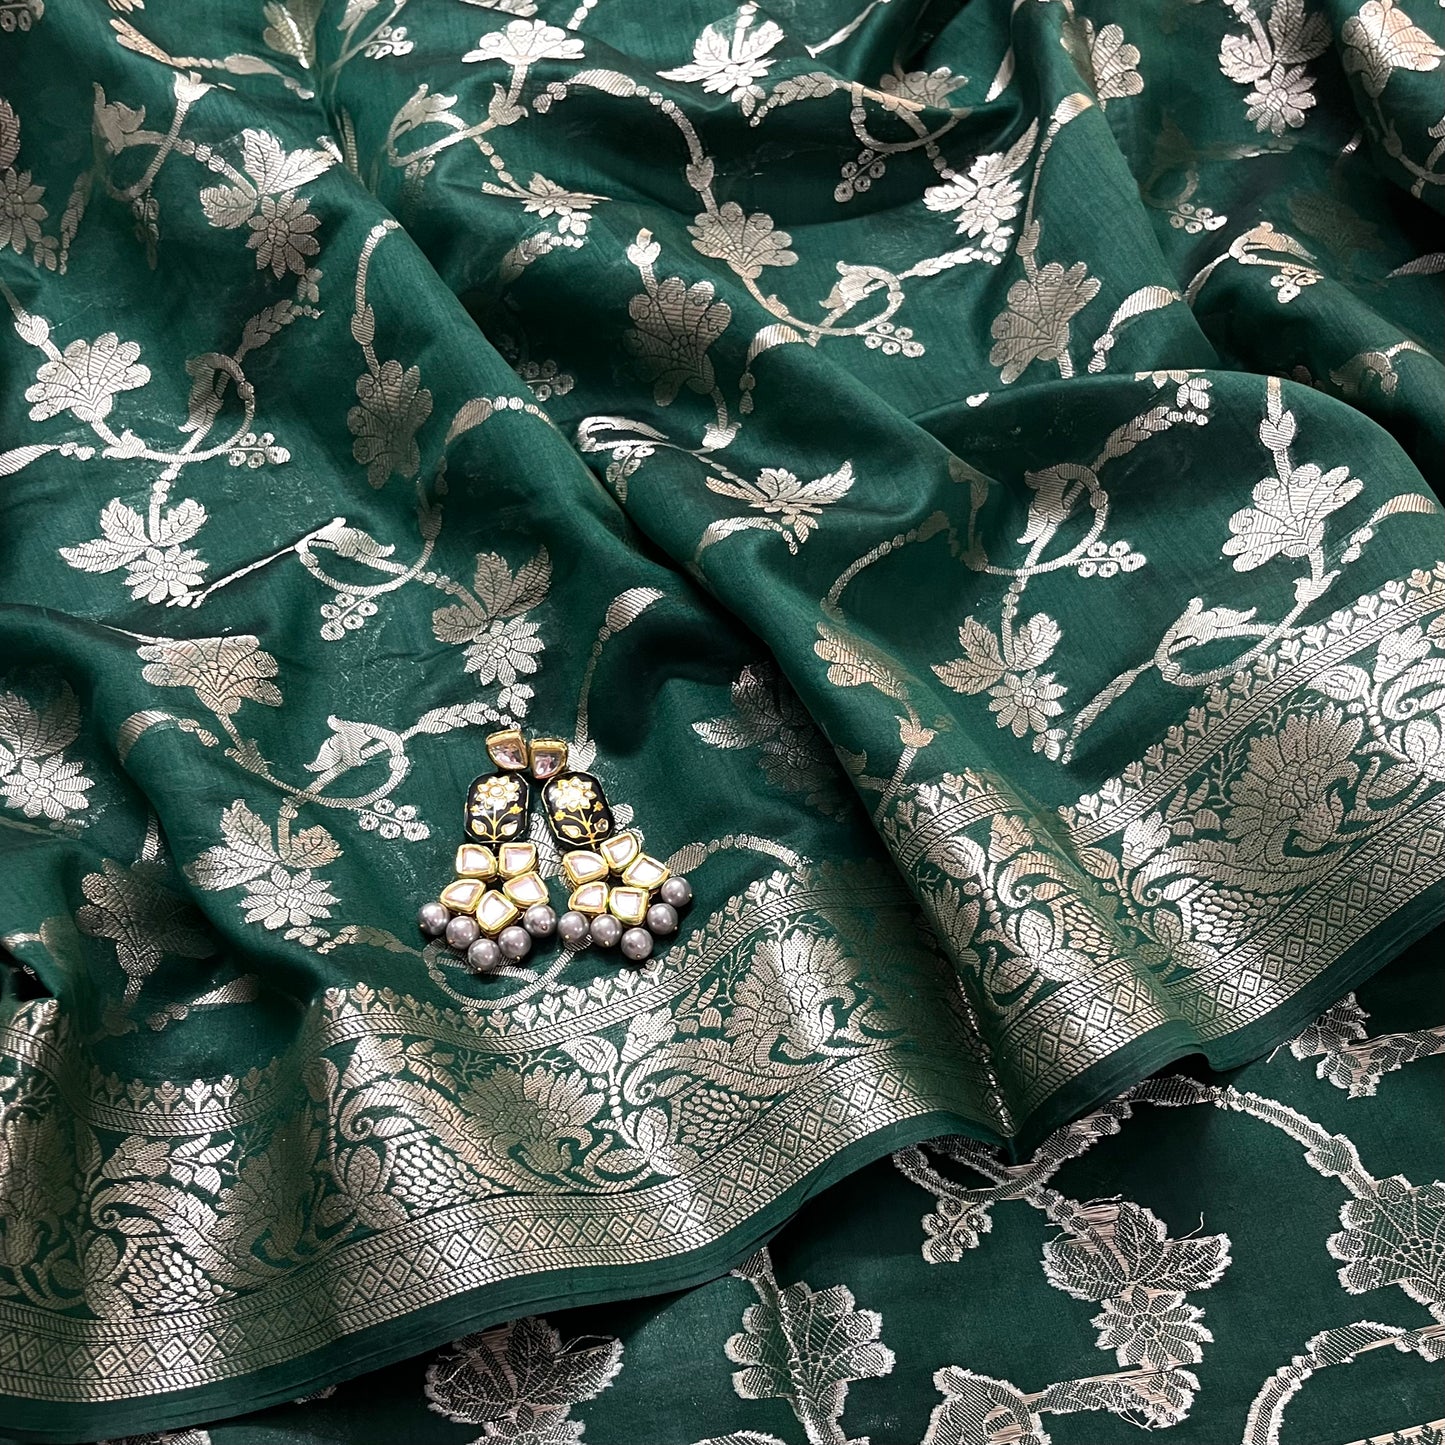 Dark green banarasi silk saree with zari pattern all over